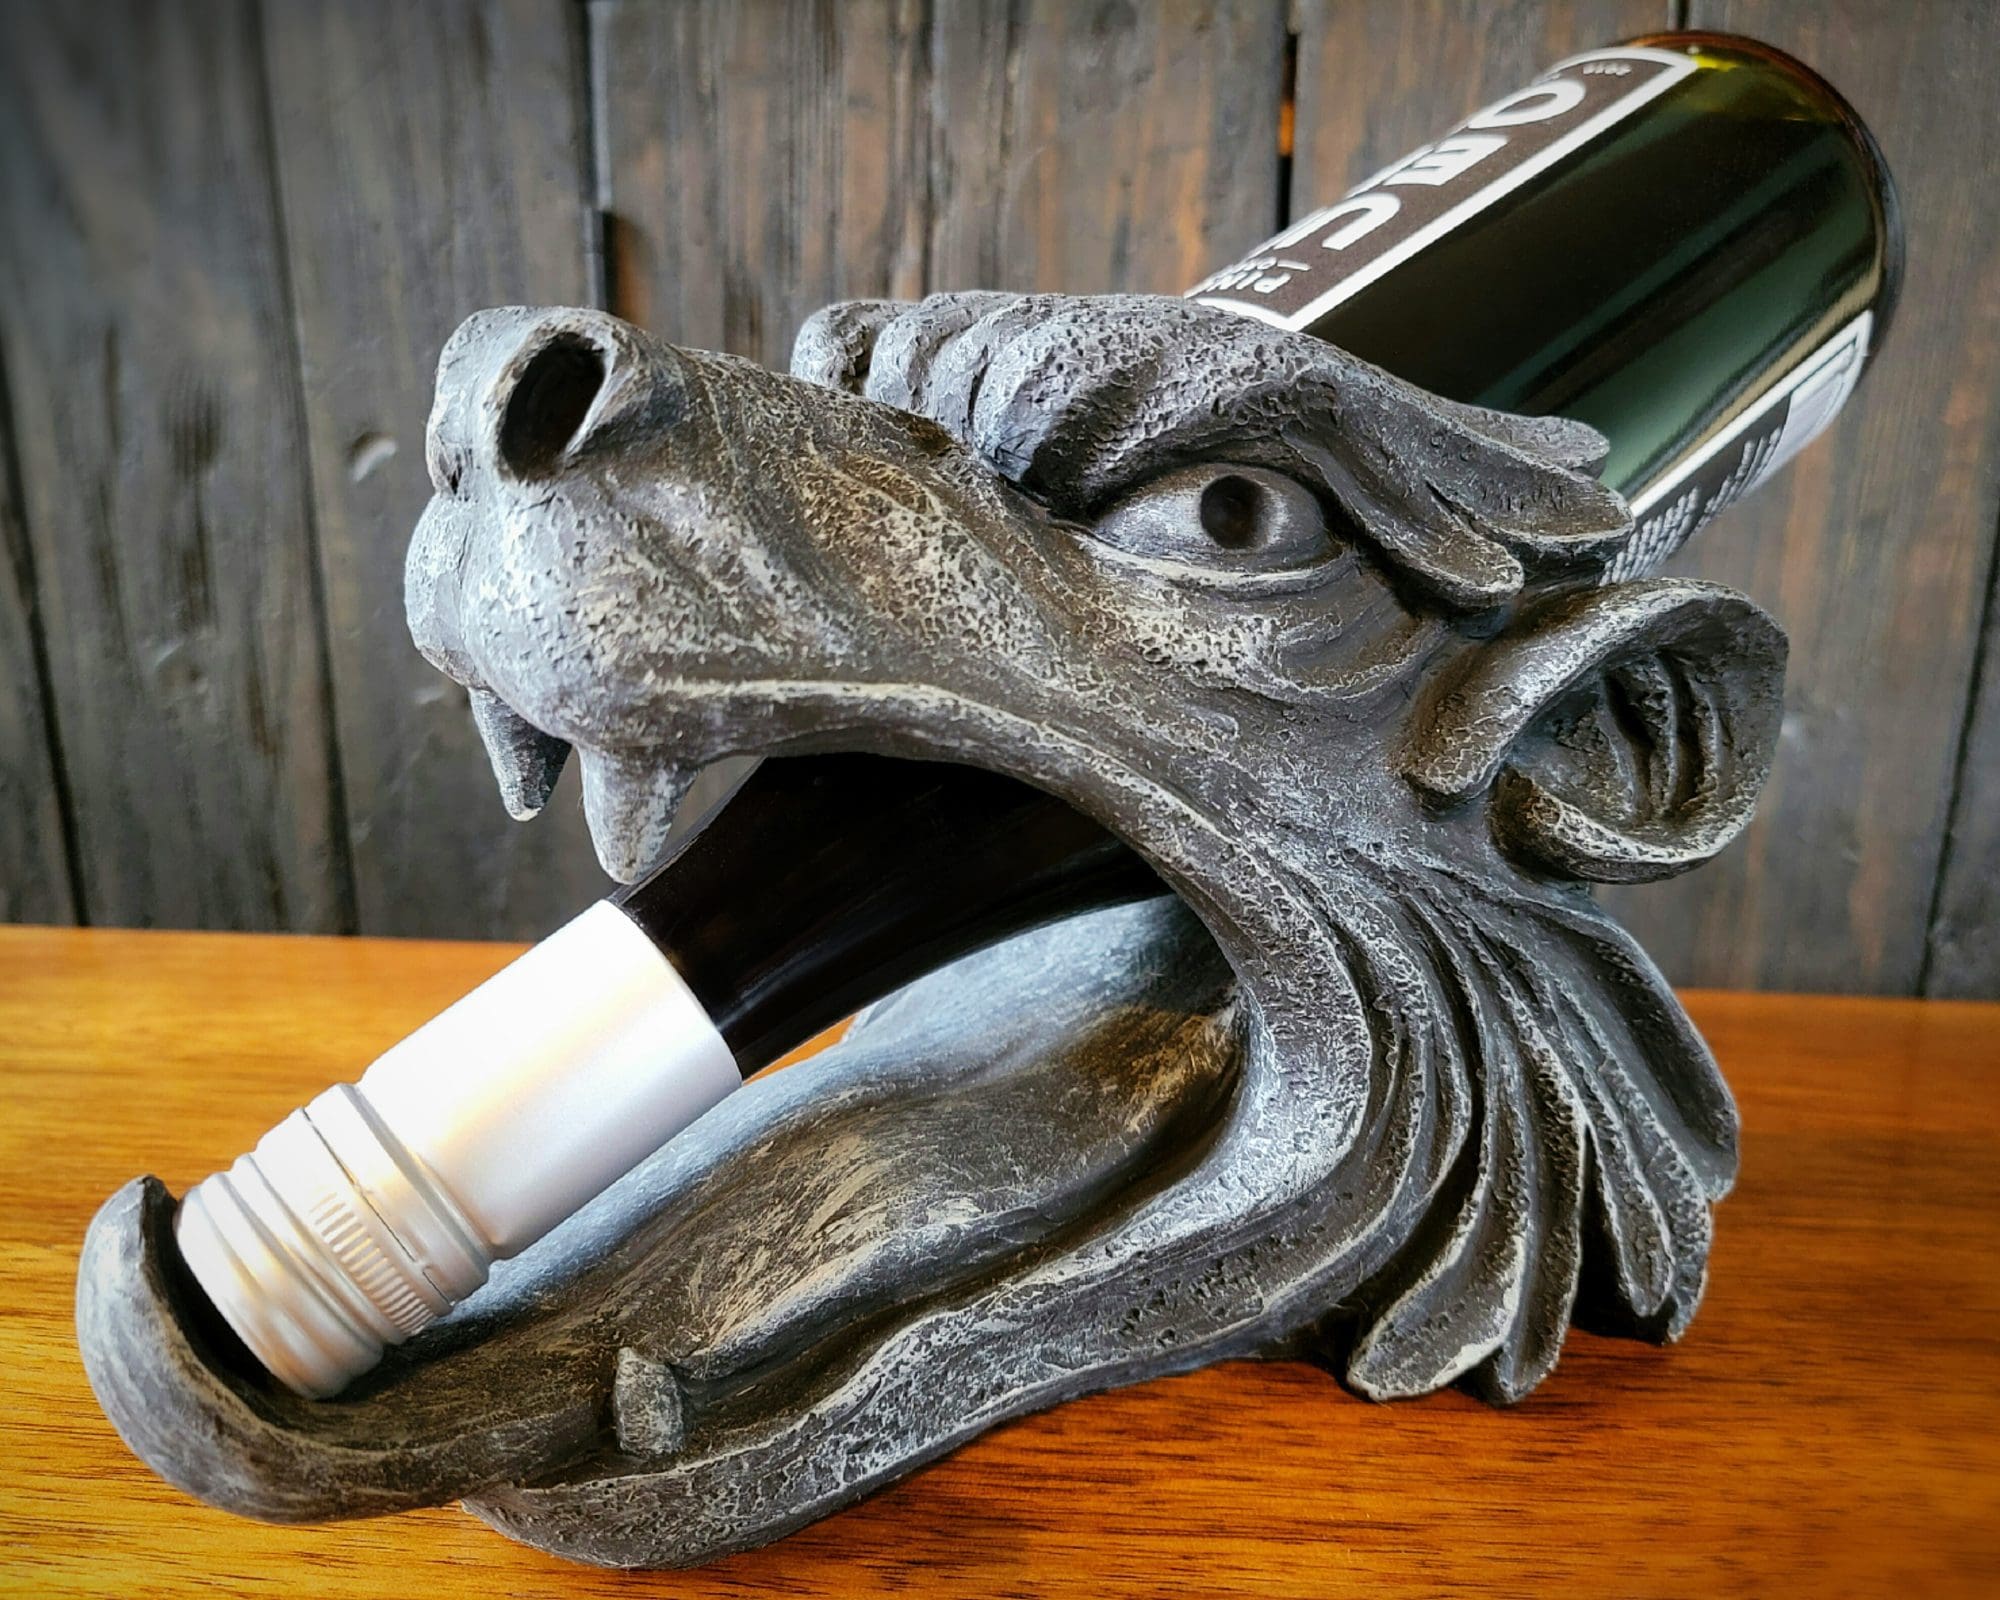 https://odditiesforsale.com/wp-content/uploads/2021/12/Gargoyle-Wine-Bottle-Holder-3-scaled.jpg